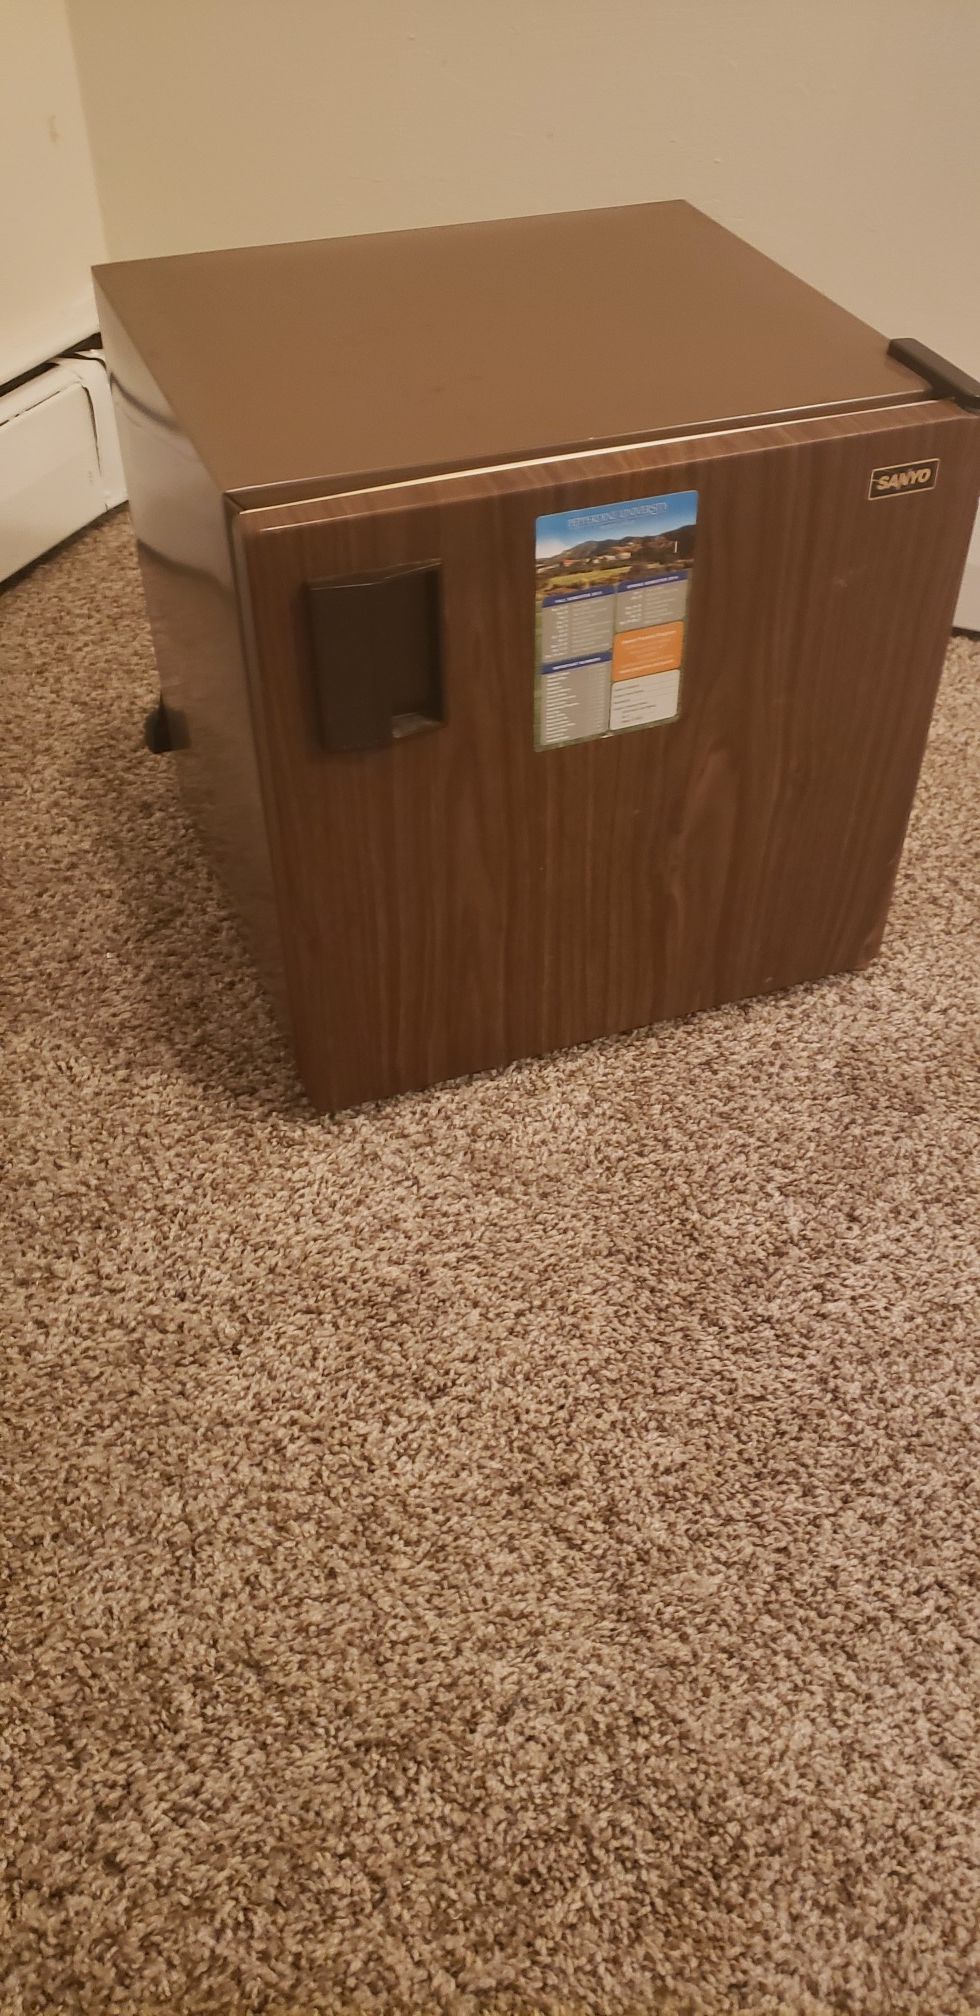 Compact brown mini fridge in great shape